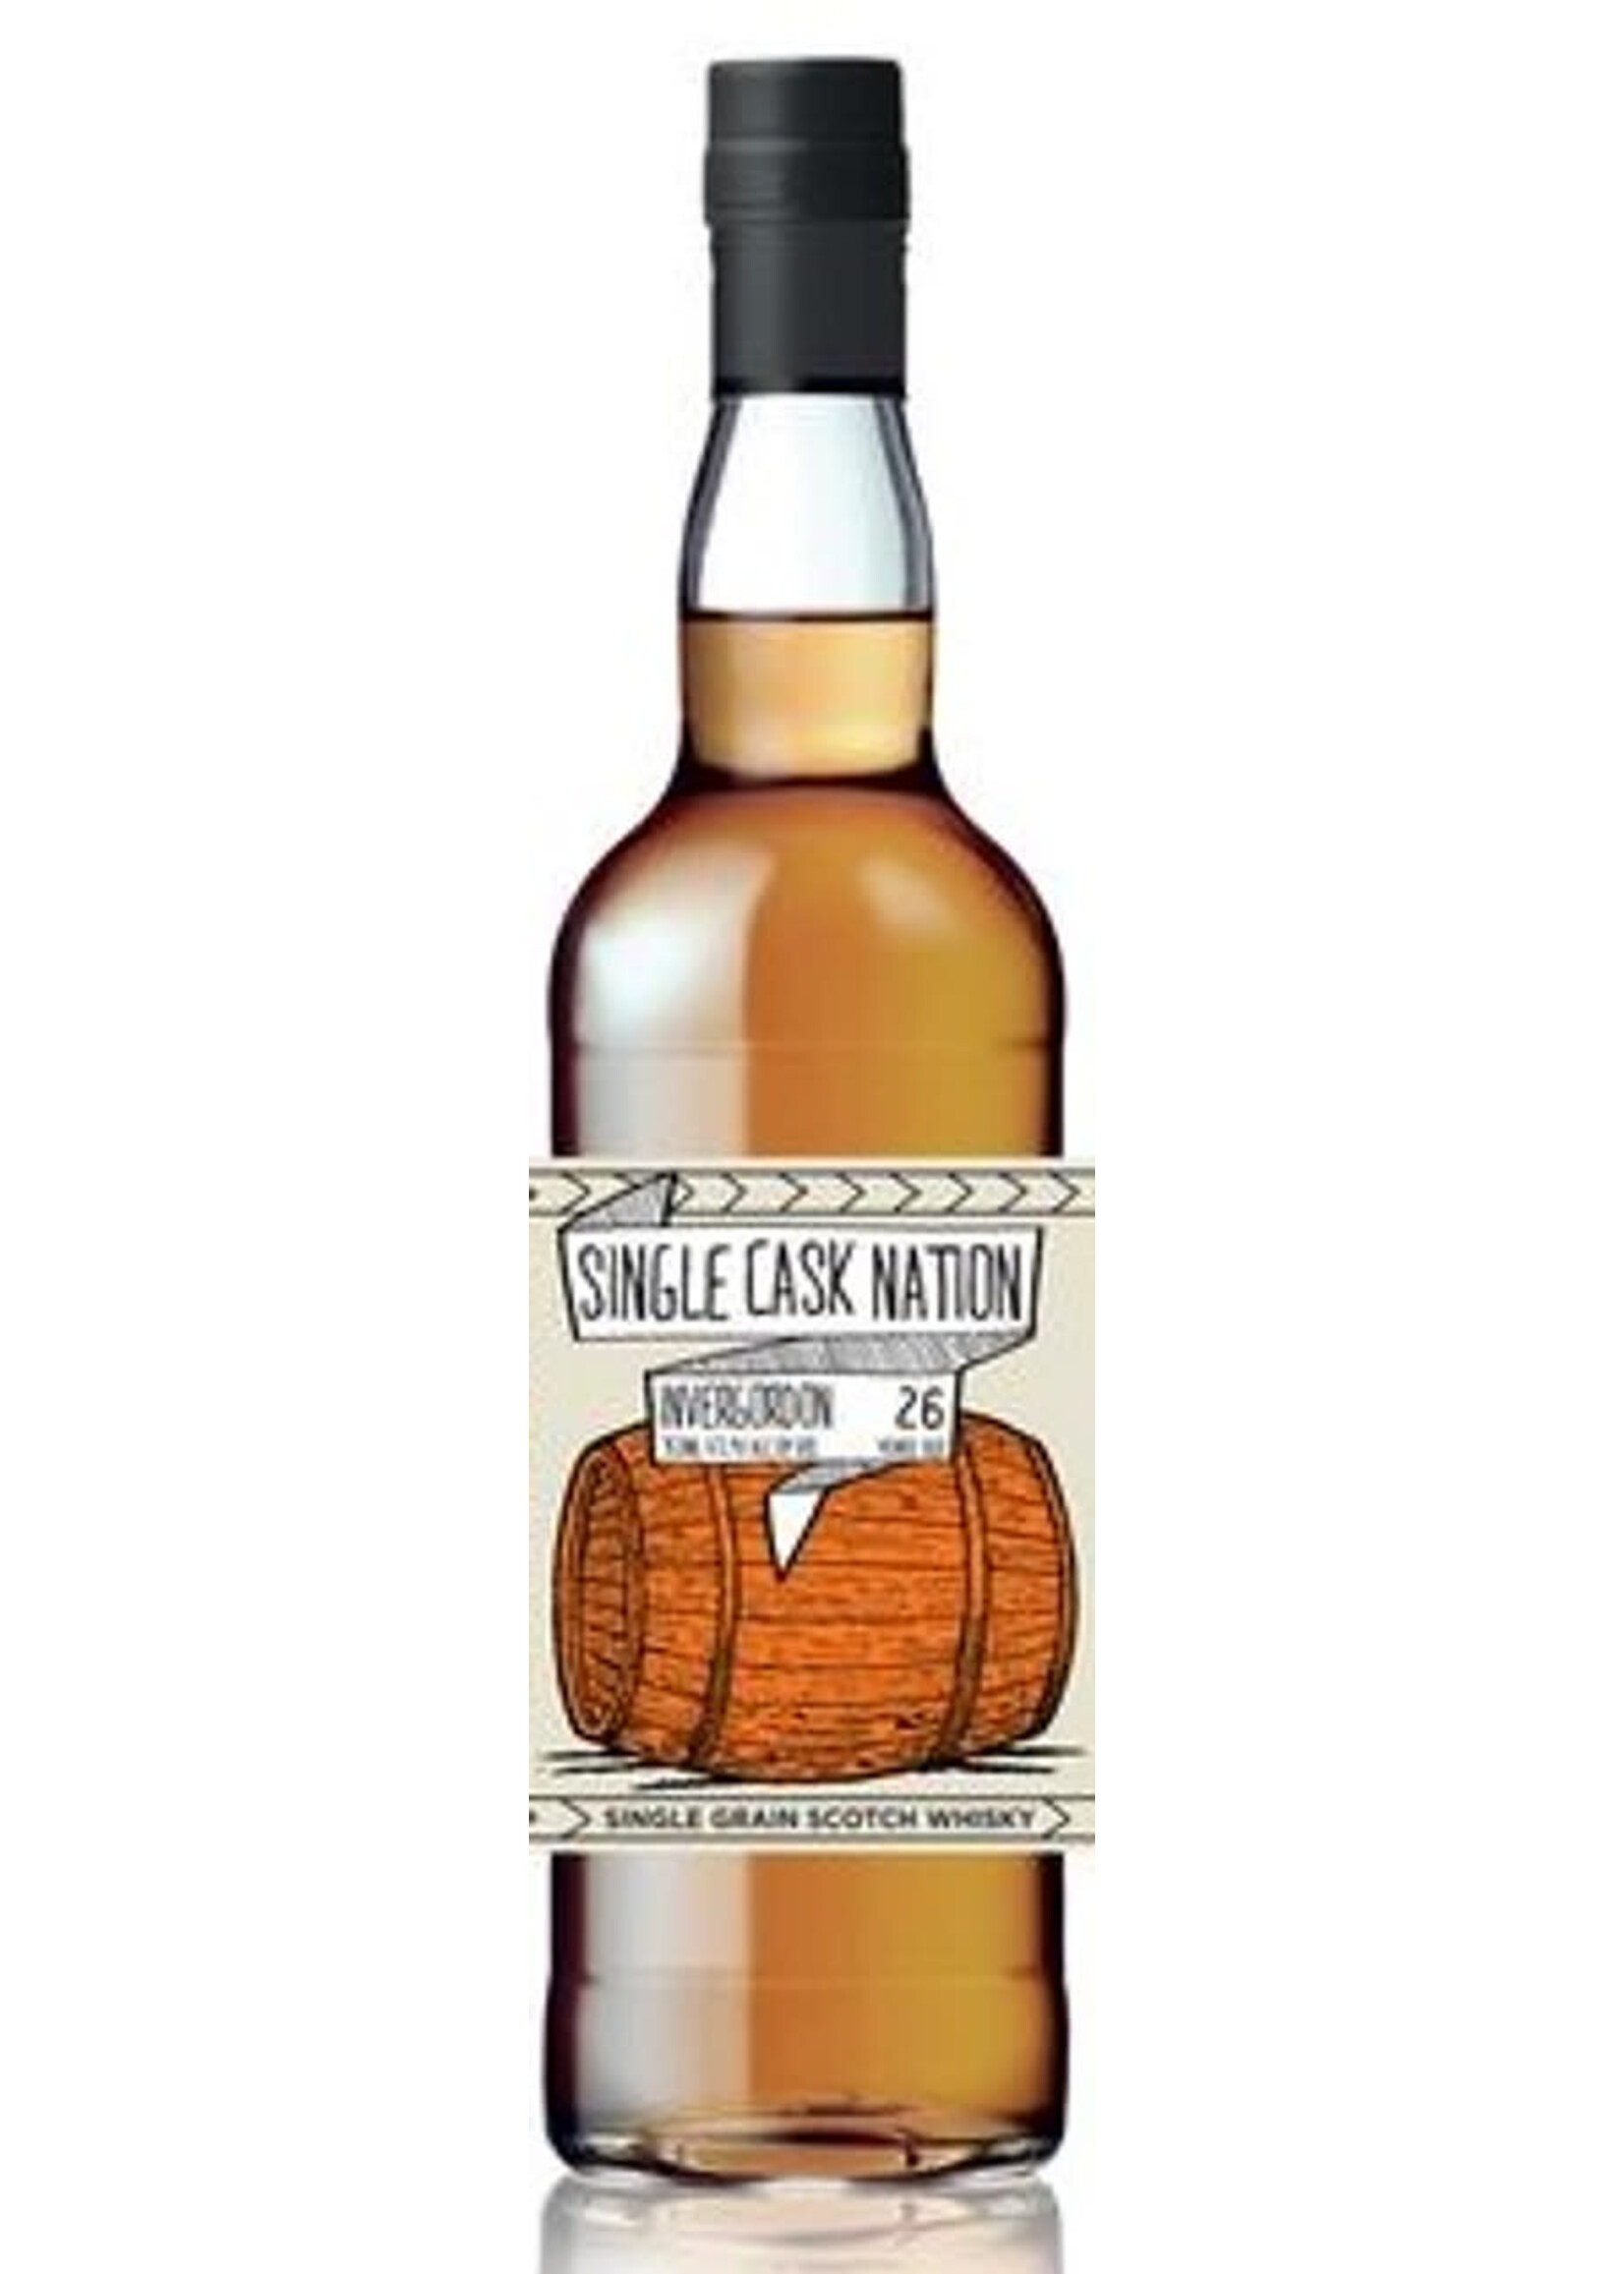 Single Cask Nation Single Cask Nation / Invergordon 26 Year Single Grain Scotch Whisky 47.9% abv / 750mL